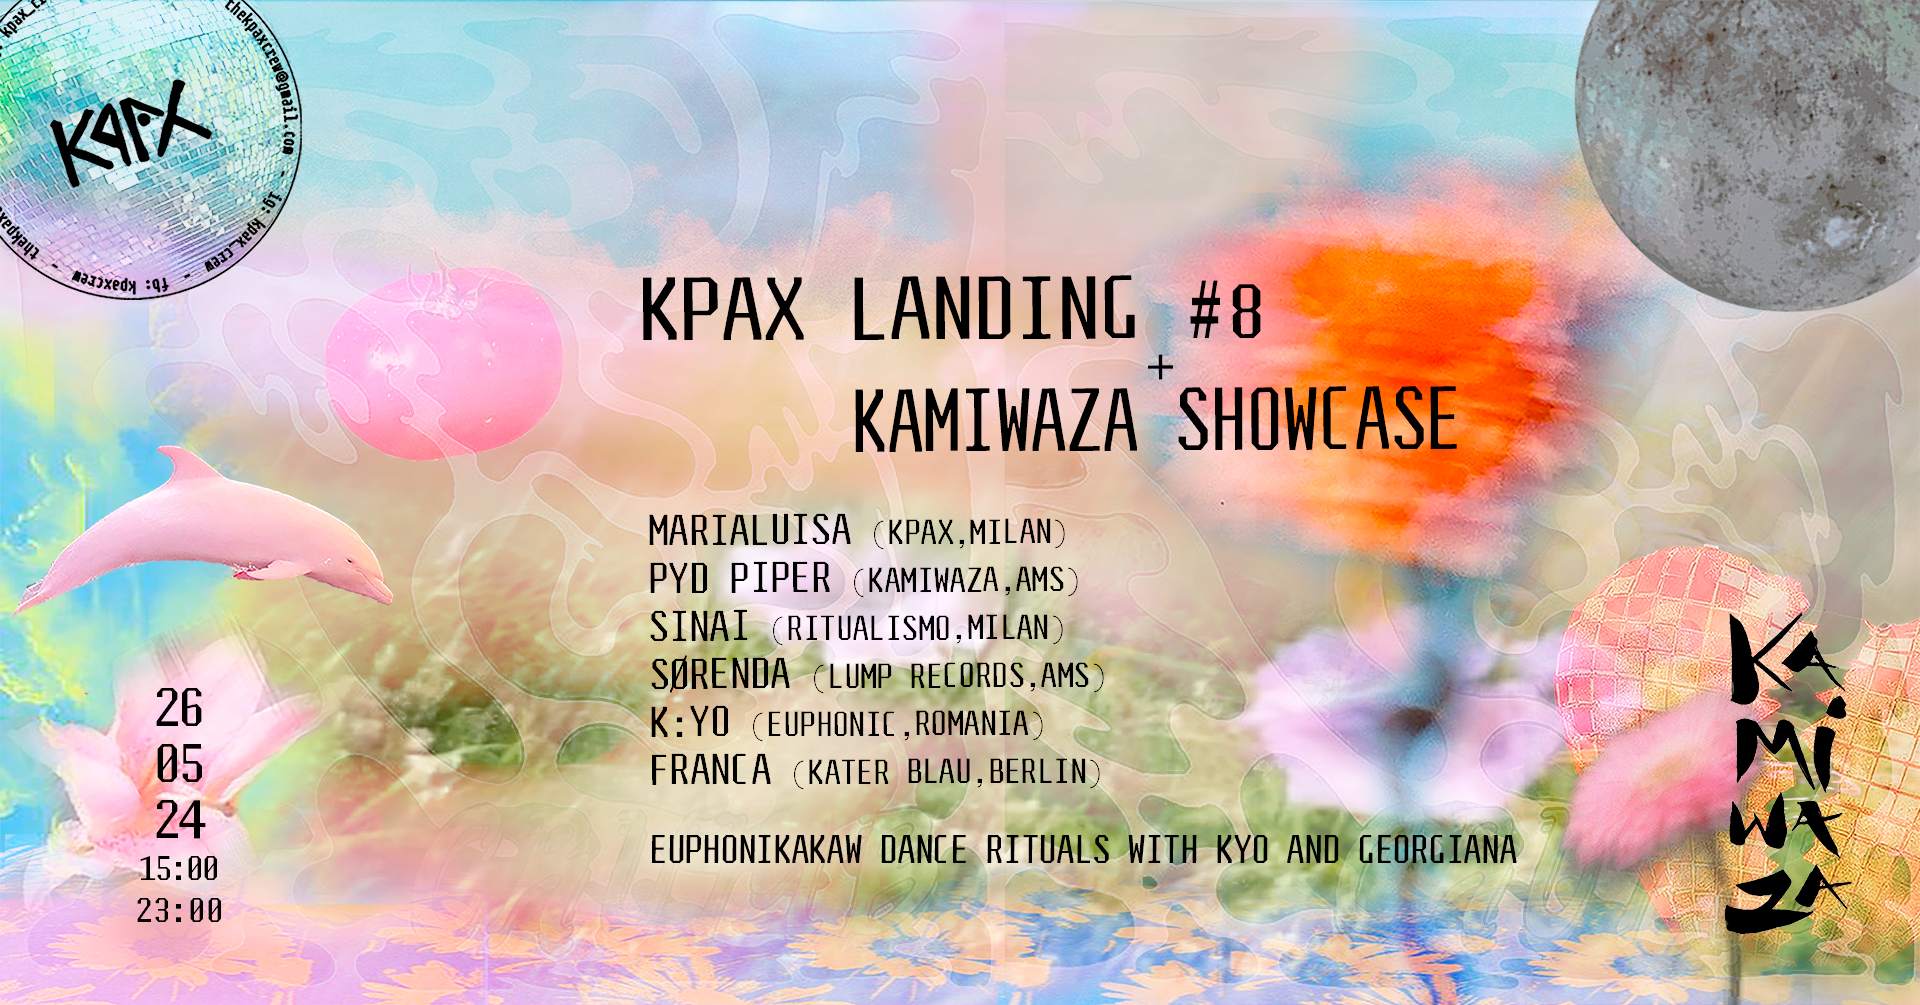 KPAX landing #08 - Kamiwaza Showcase // Franca (Kater Blau) - フライヤー表